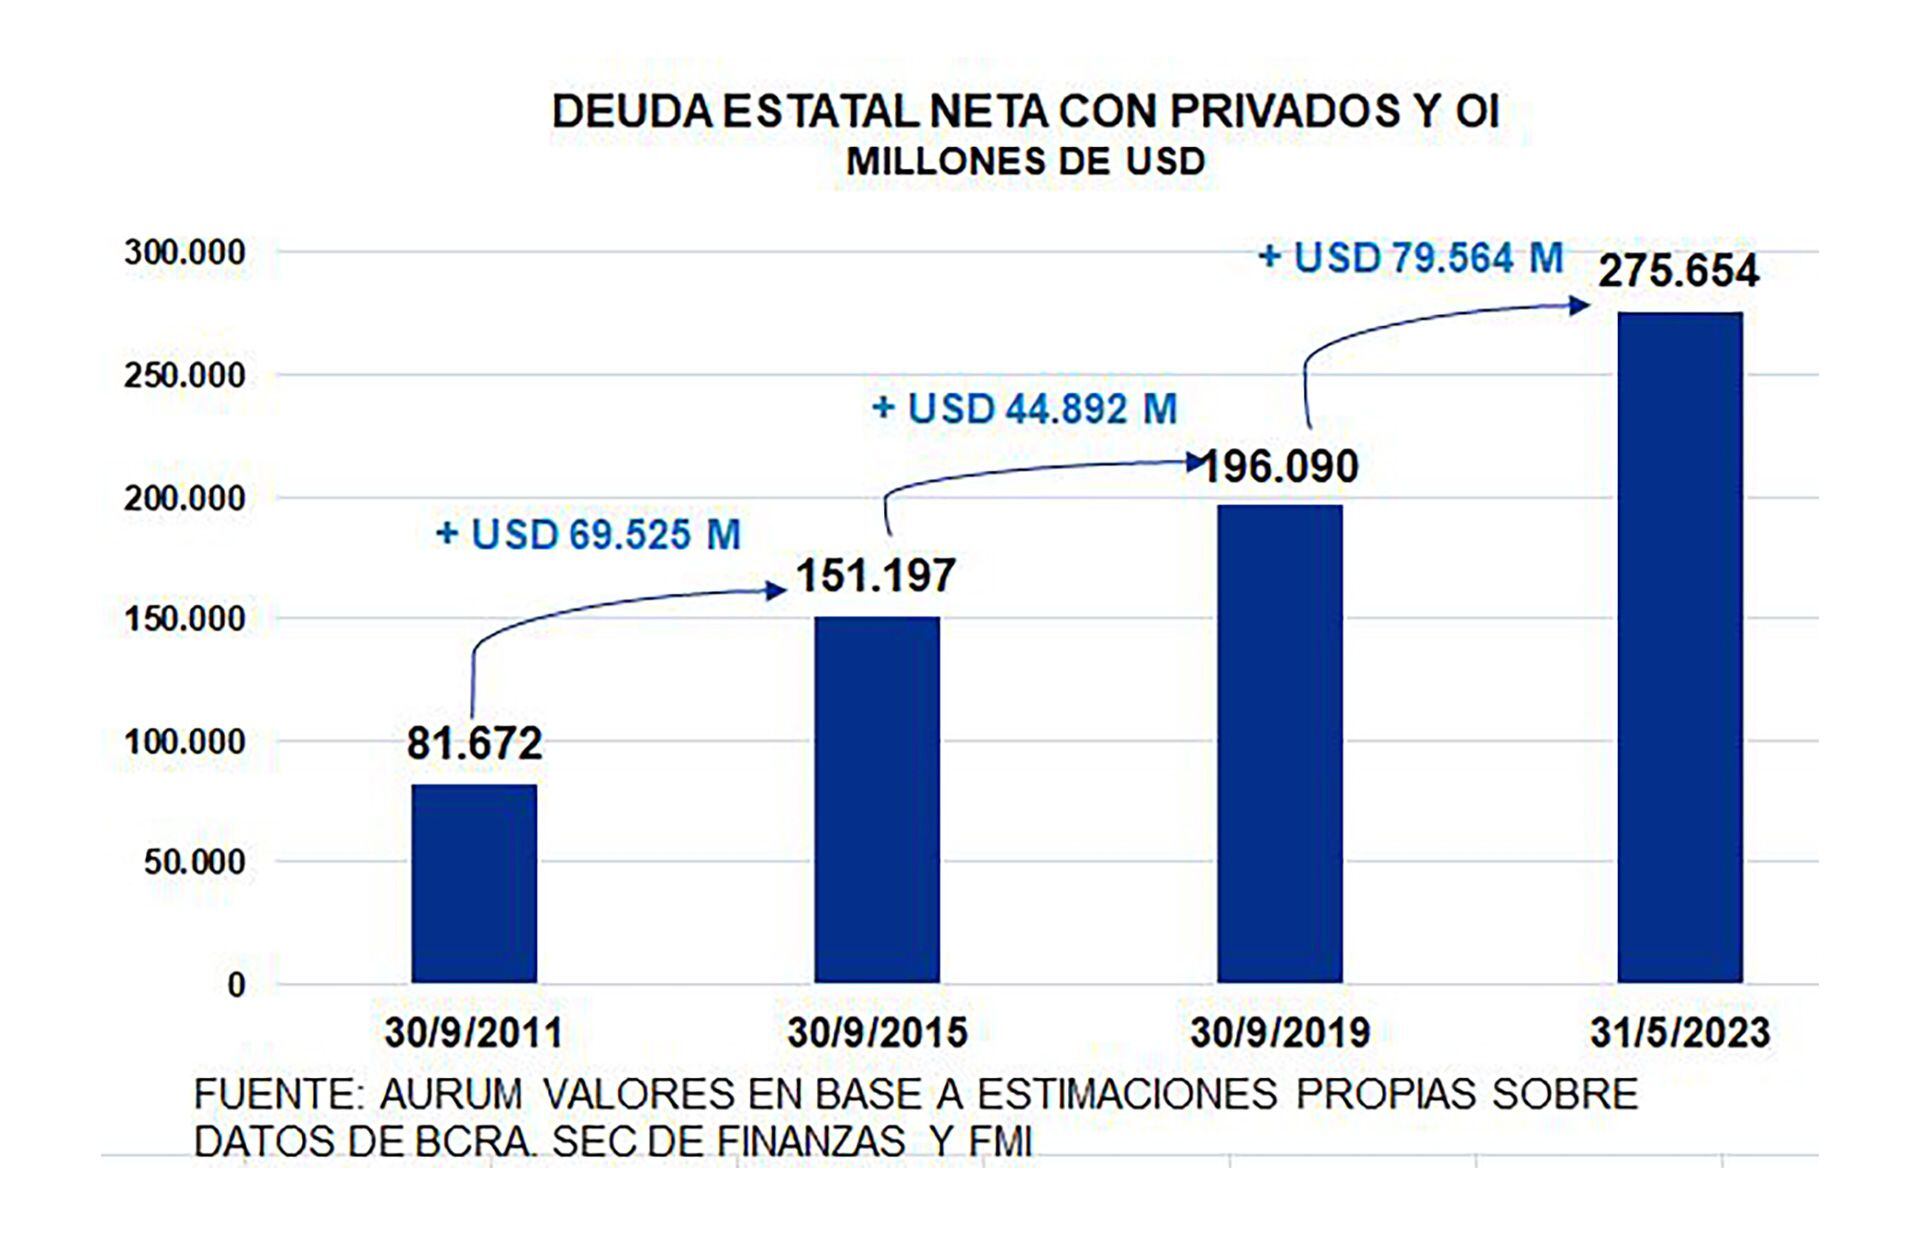 AURUM Deuda estatal neta CFK Macri Fernández